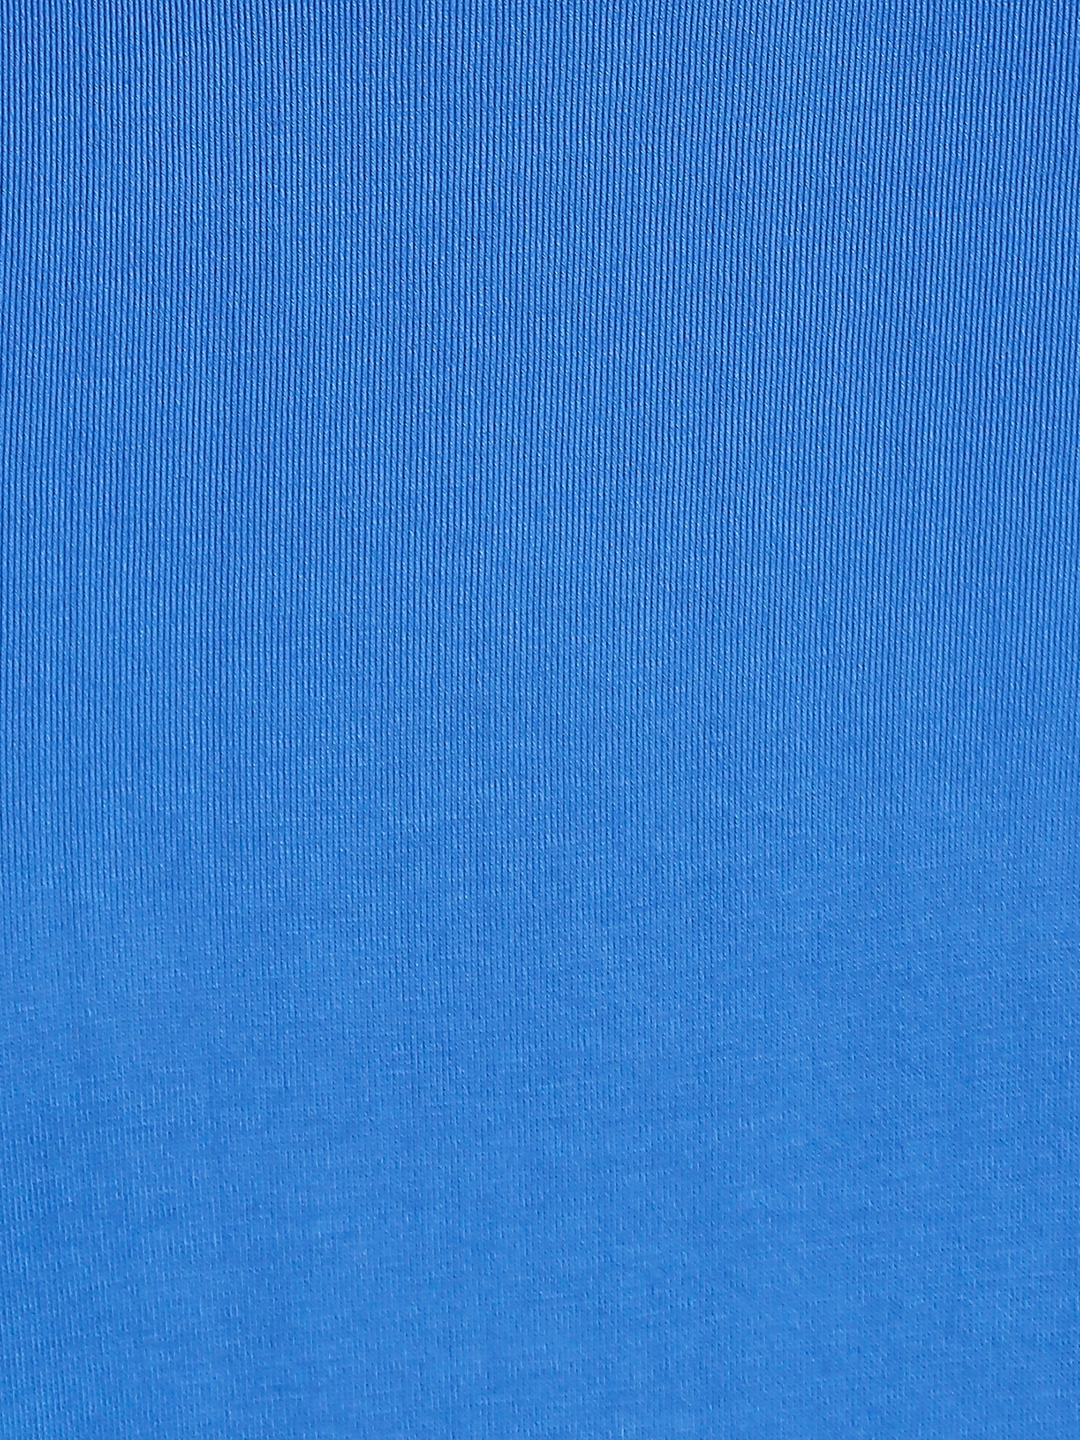 creativeideas.store | YOGA Made In India Blue Tshirt 1